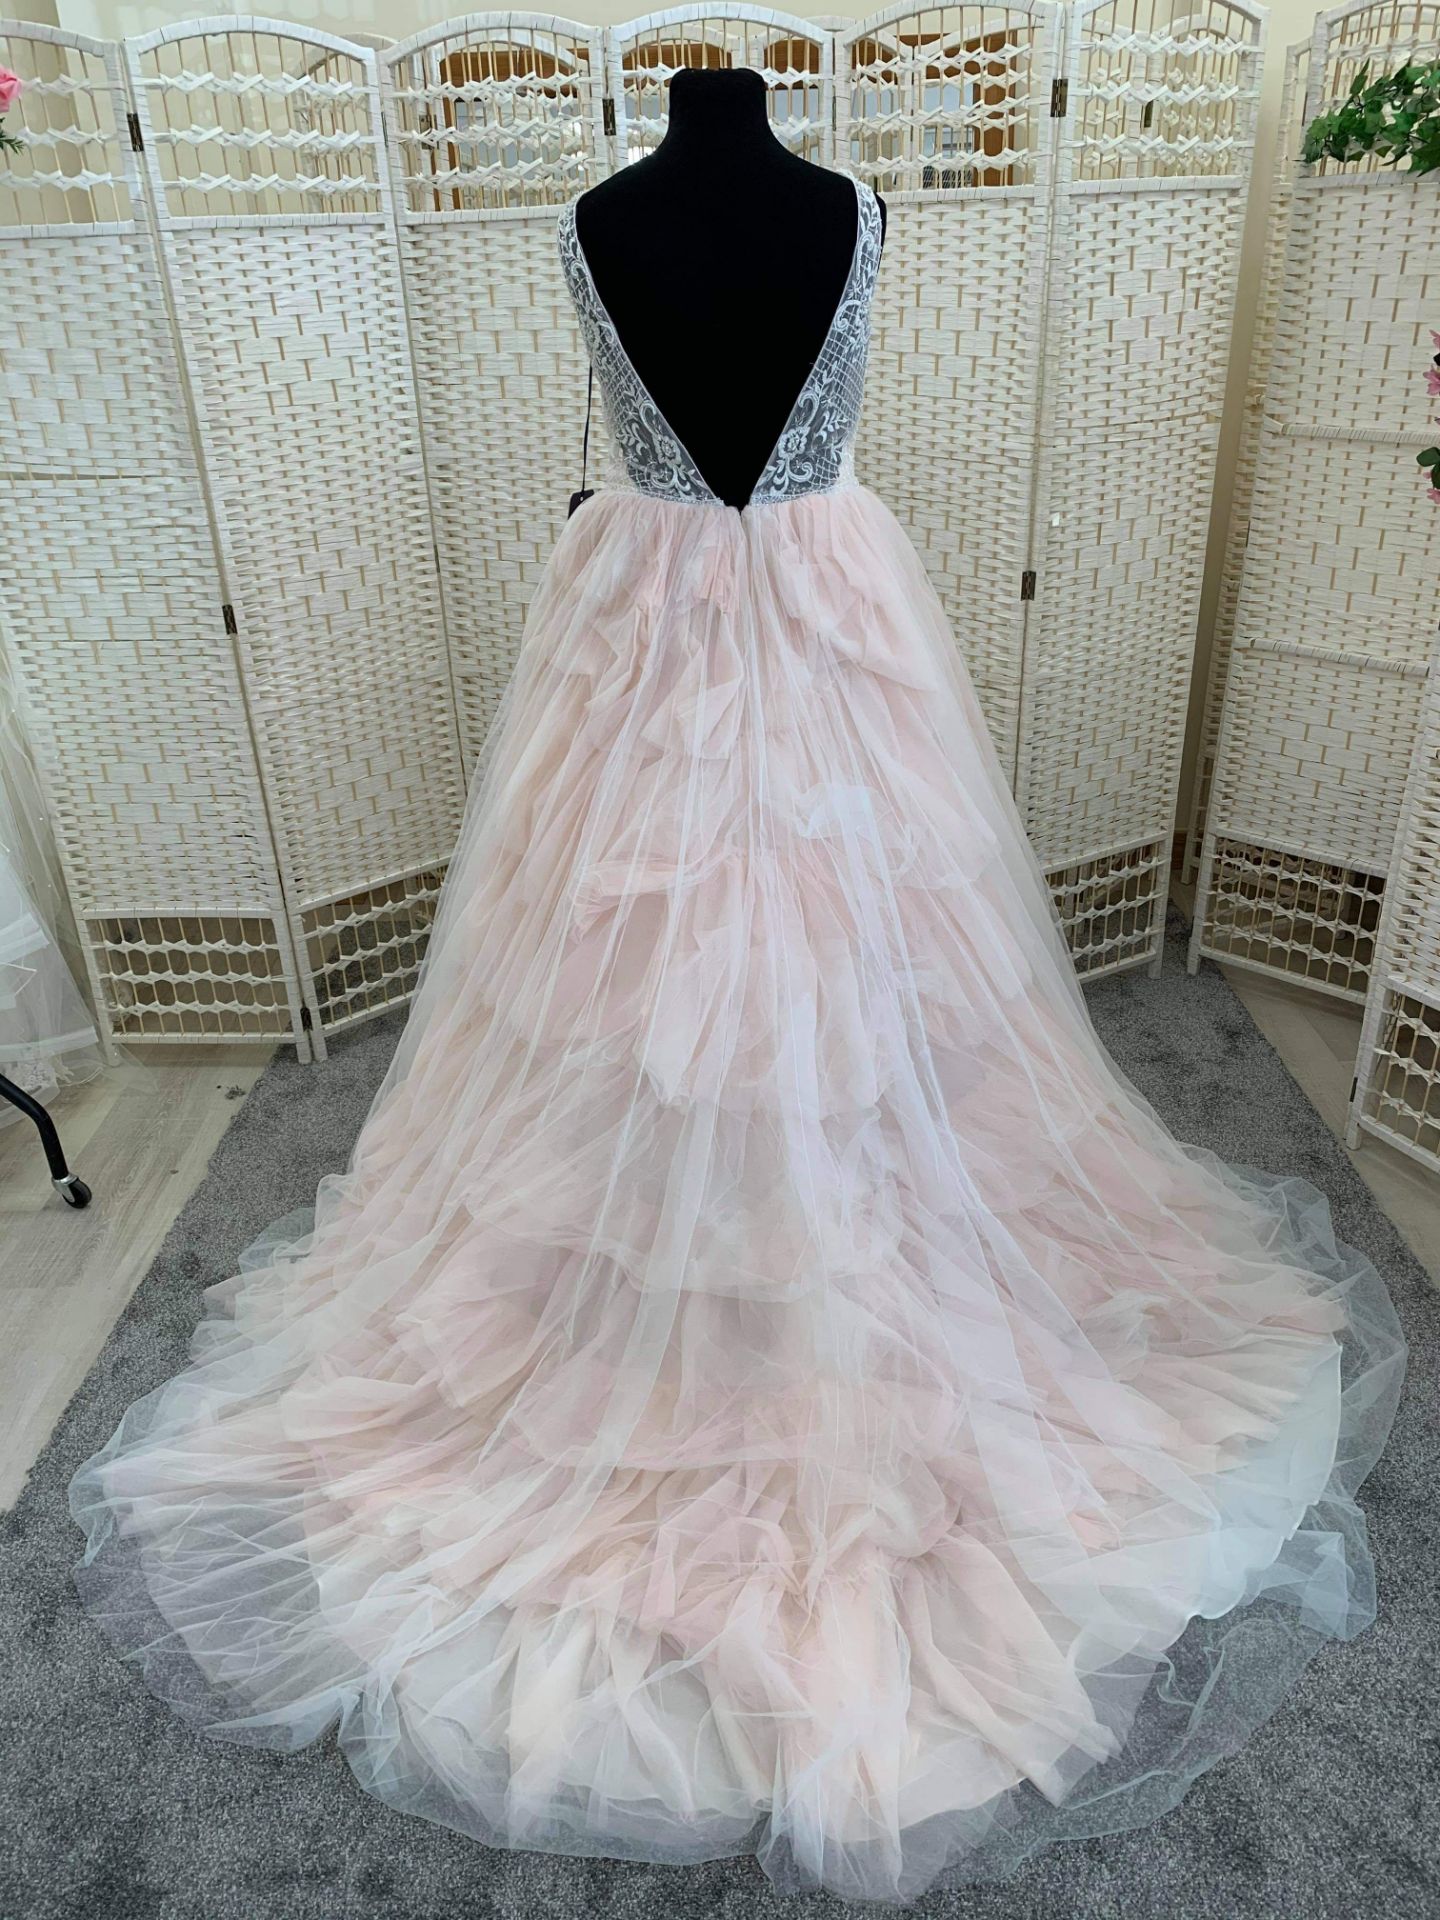 Marys Bridal Wedding Dress Size 18 - Image 4 of 5